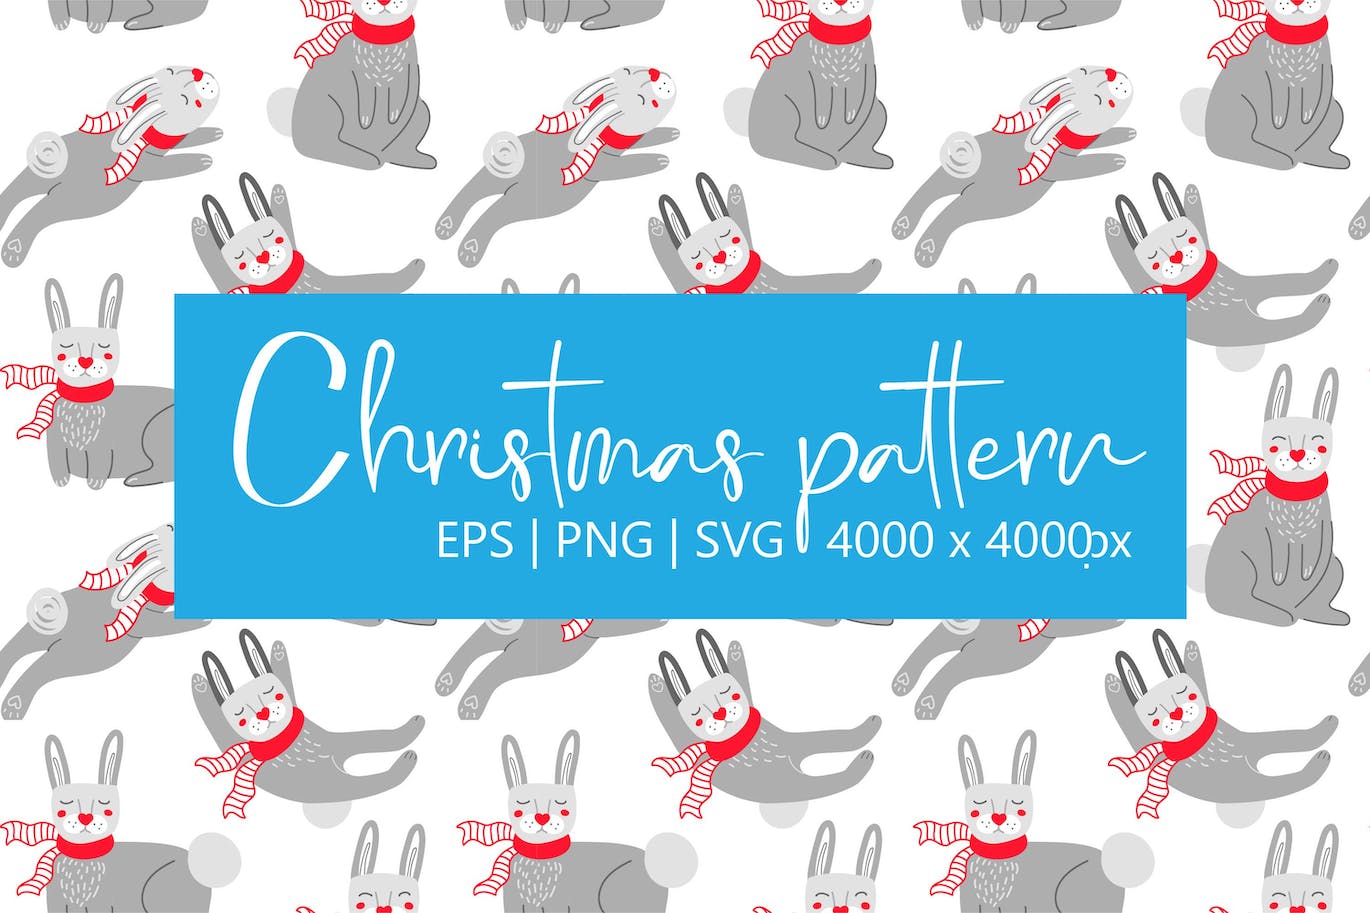 围巾里的兔子图案 (EPS,JPG,PNG,SVG)